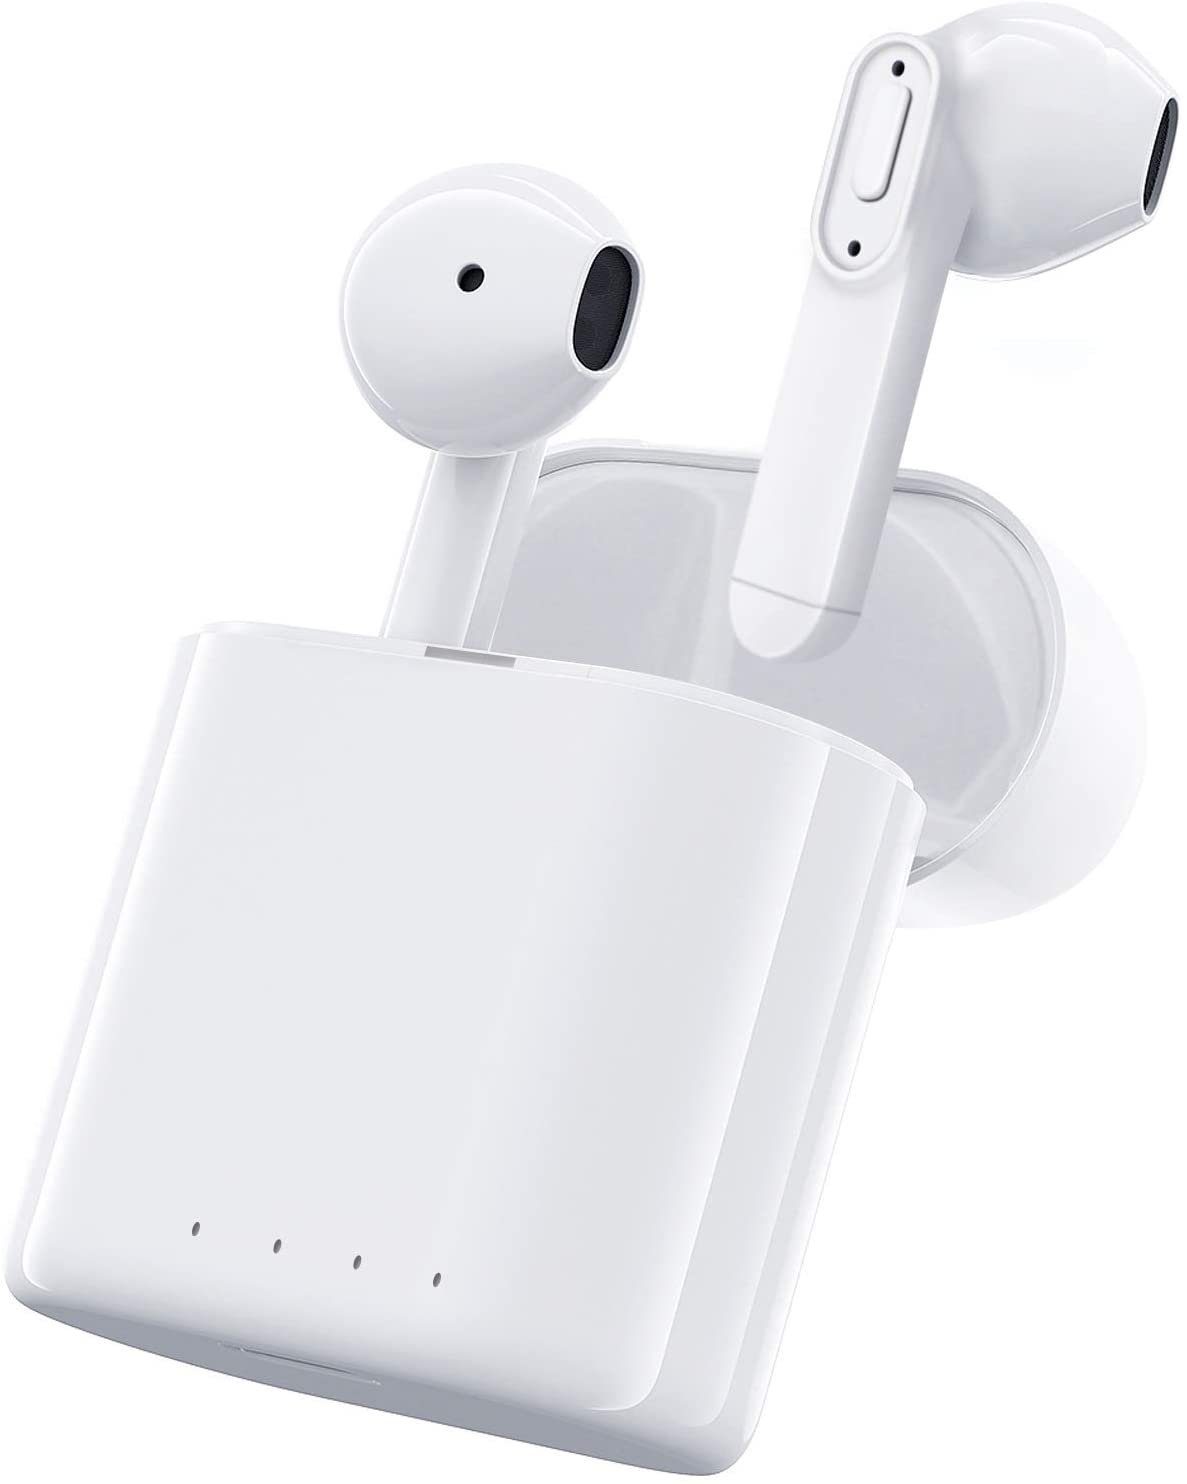 drahtlose HiFi-Stereo-Touch-Kopfhörer tragbare drahtlose Ladebox Sportkopfhörer USB-C-Schnellladung Drahtlose In-Ear-Kopfhörer Bluetooth 5.0 Weiß 